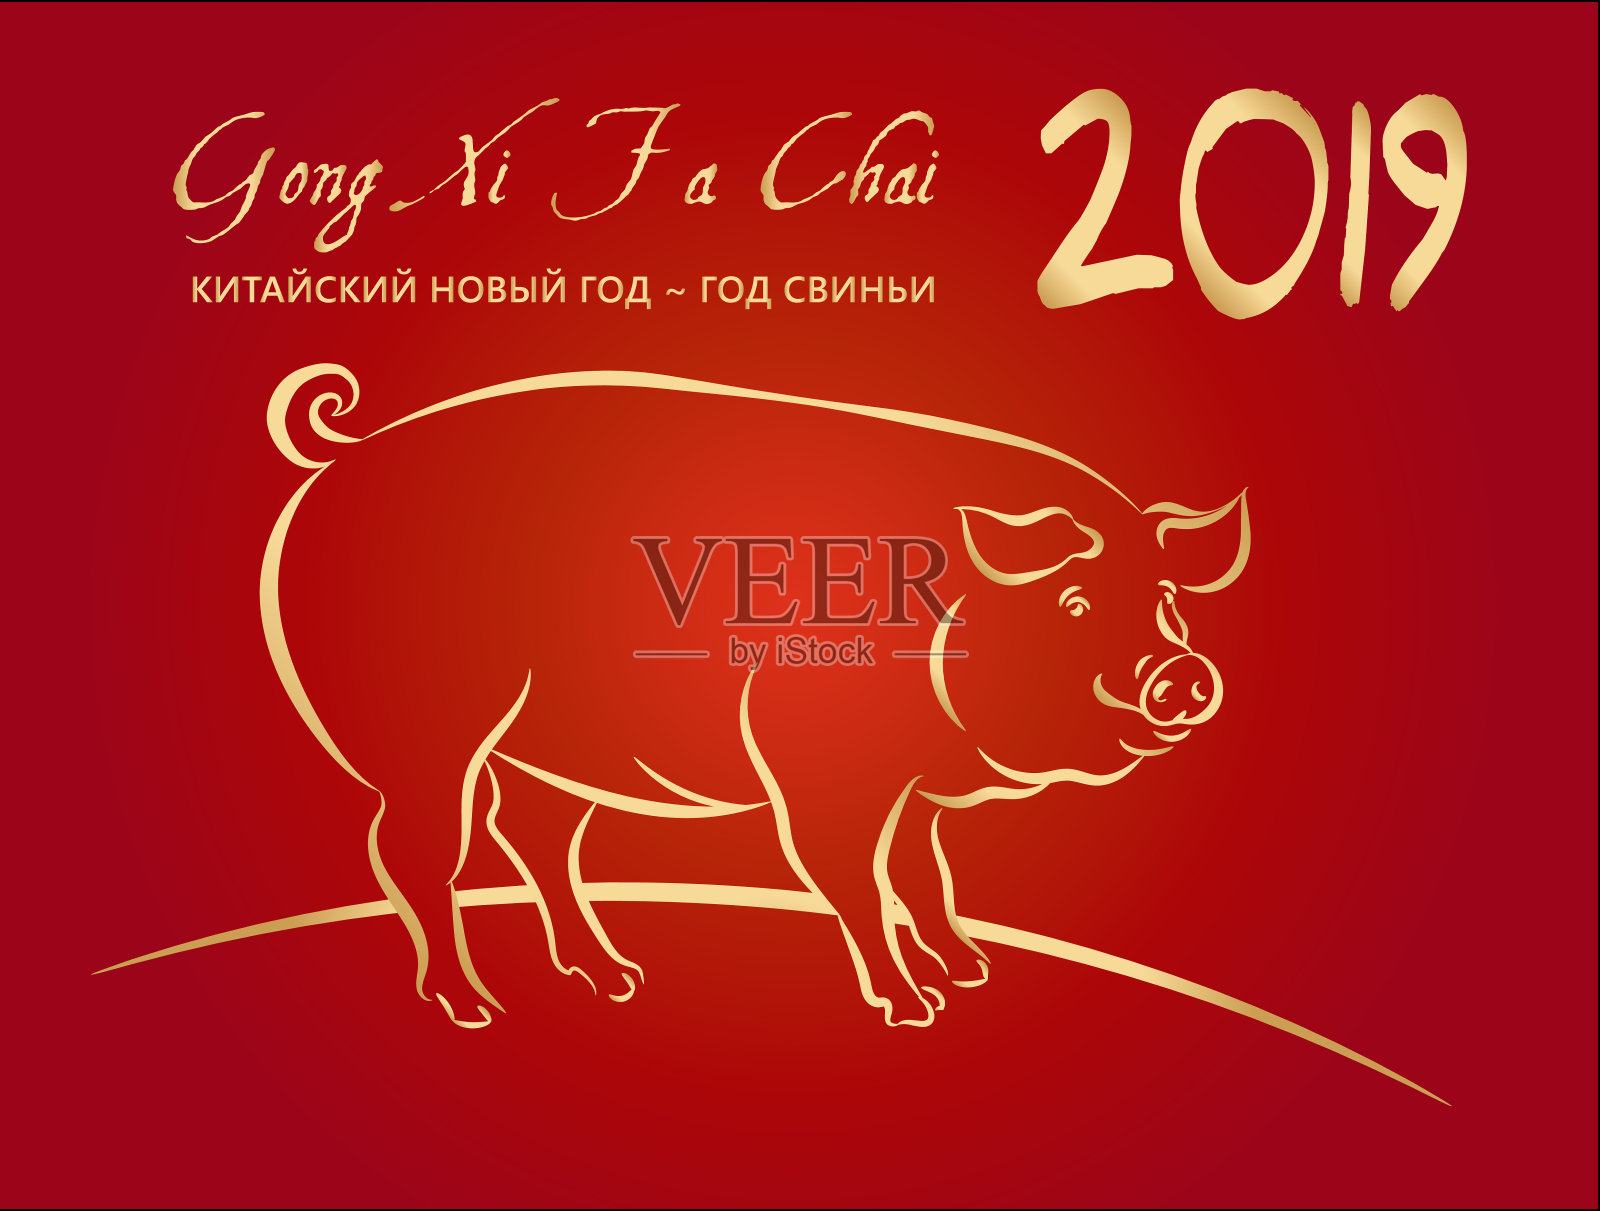 2019年“金猪”新年祝福卡片。设计模板素材